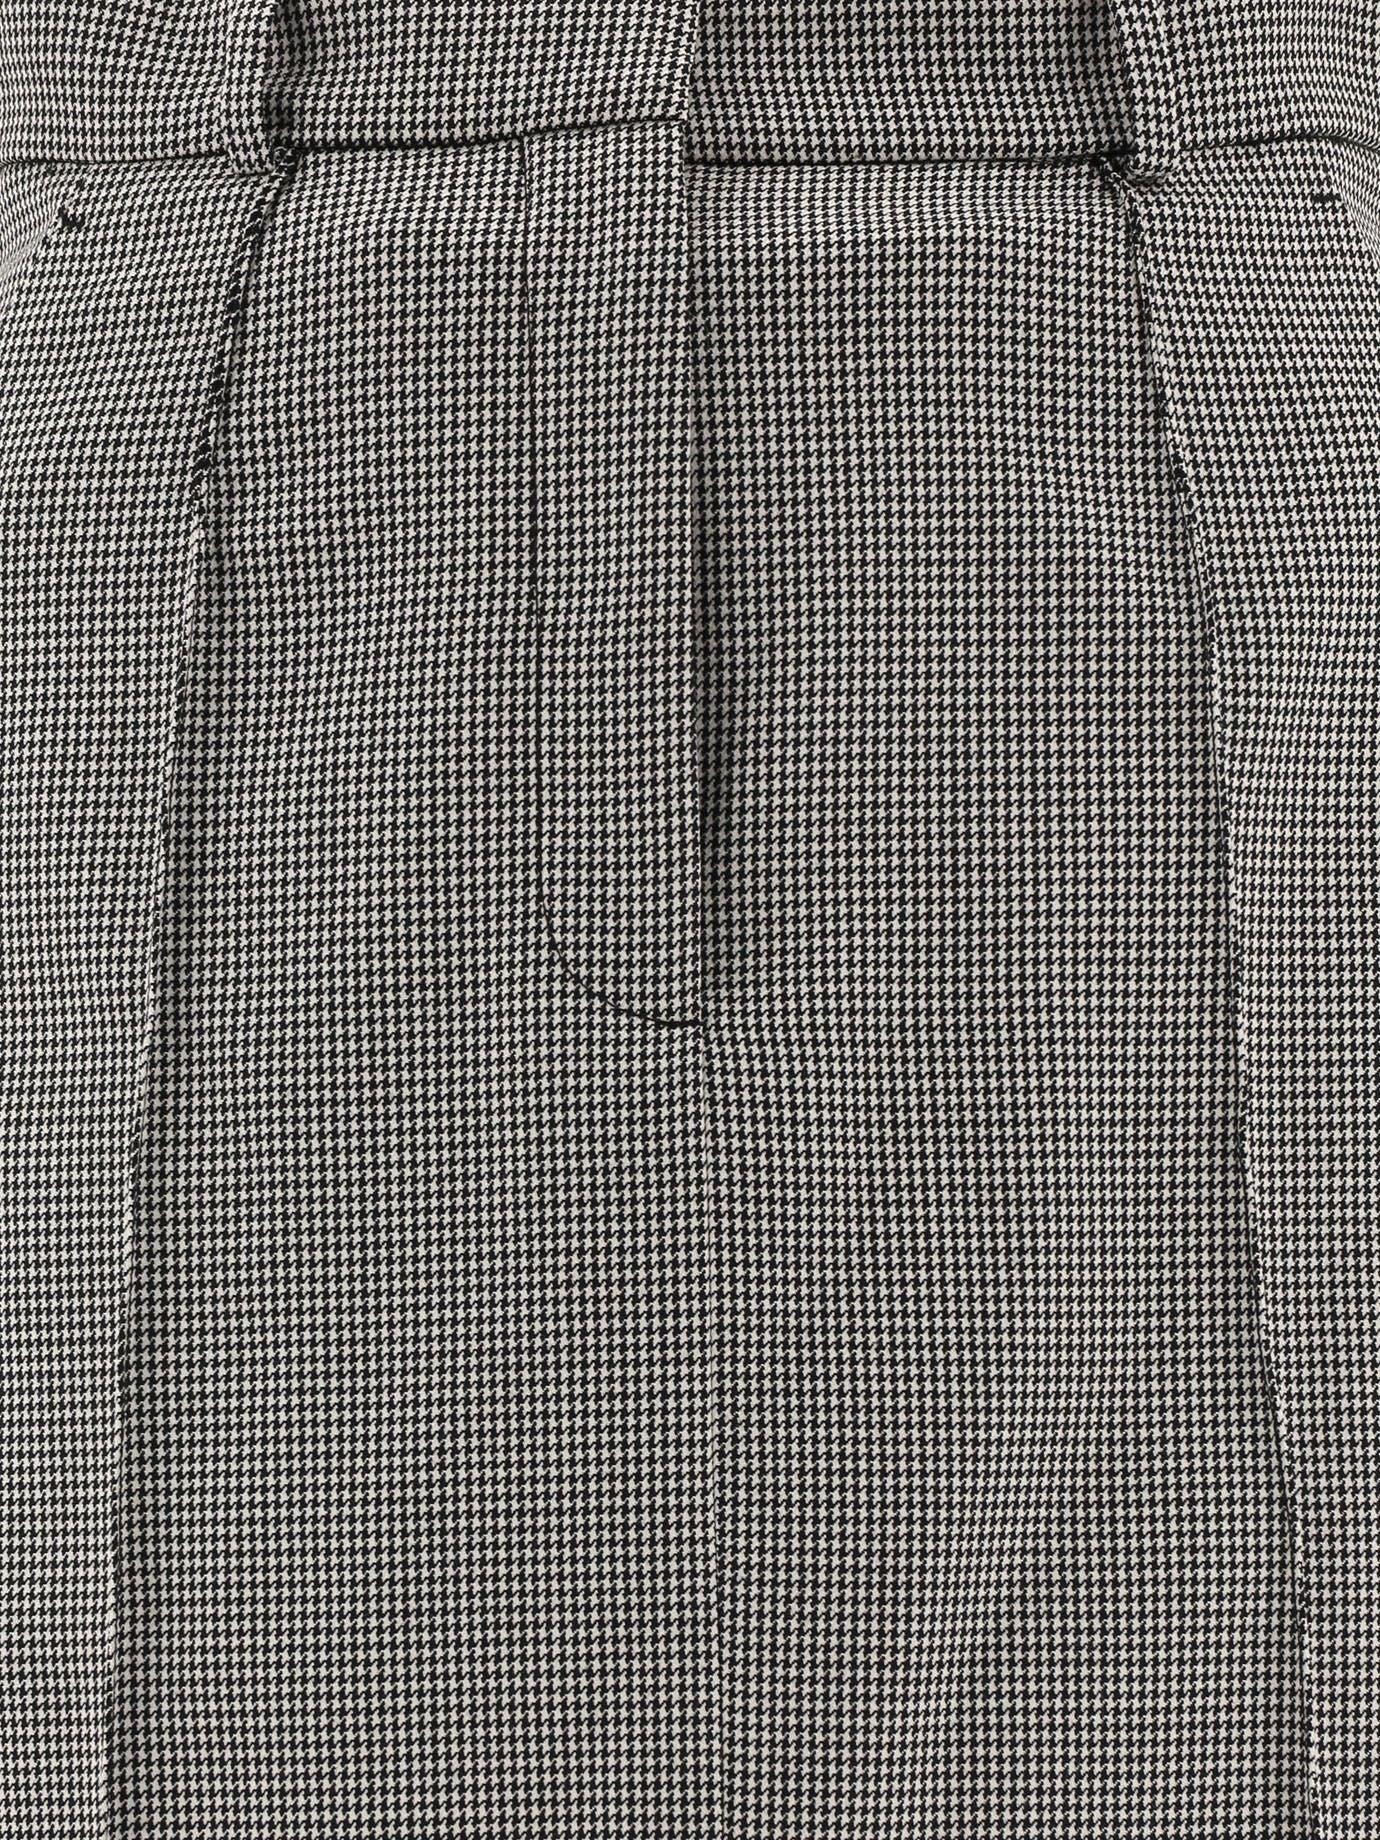 Womens Skirts Alexander McQueen Skirts - Save 43% Alexander McQueen Womens Skirt in Grey,Black Grey 